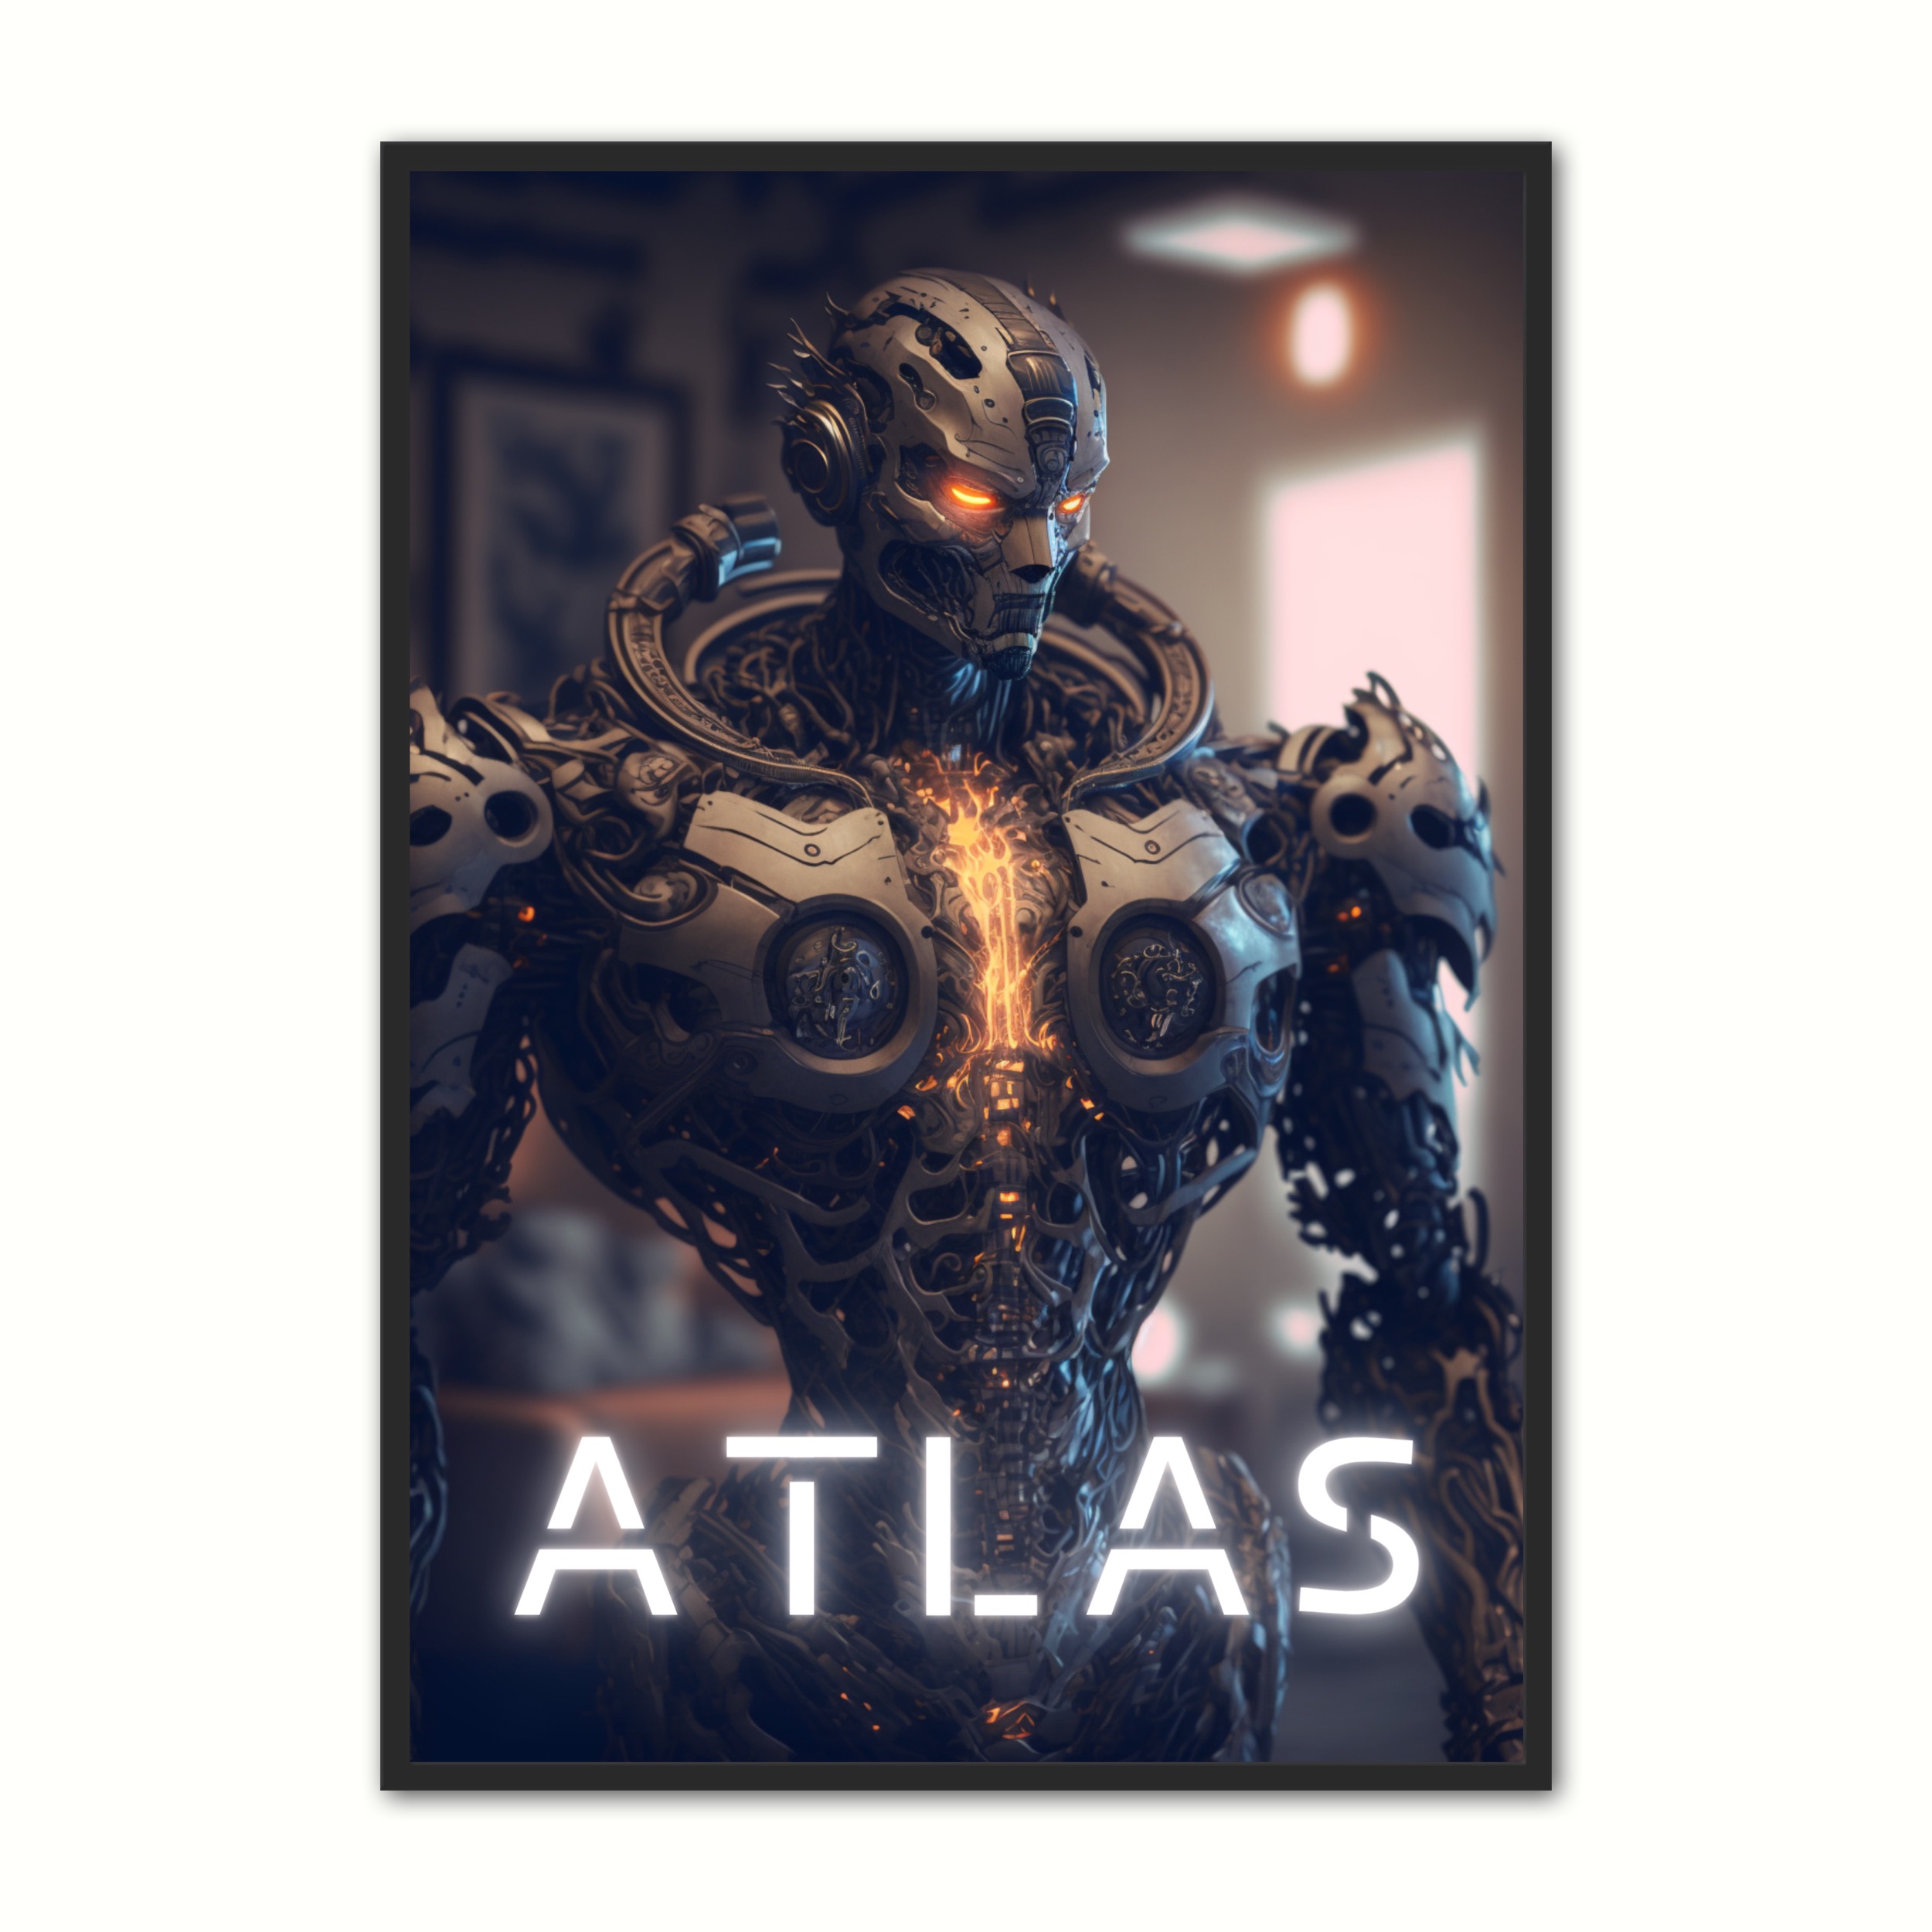 Se Plakat med Atlas - Android 21 x 29,7 cm (A4) hos Nyplakat.dk